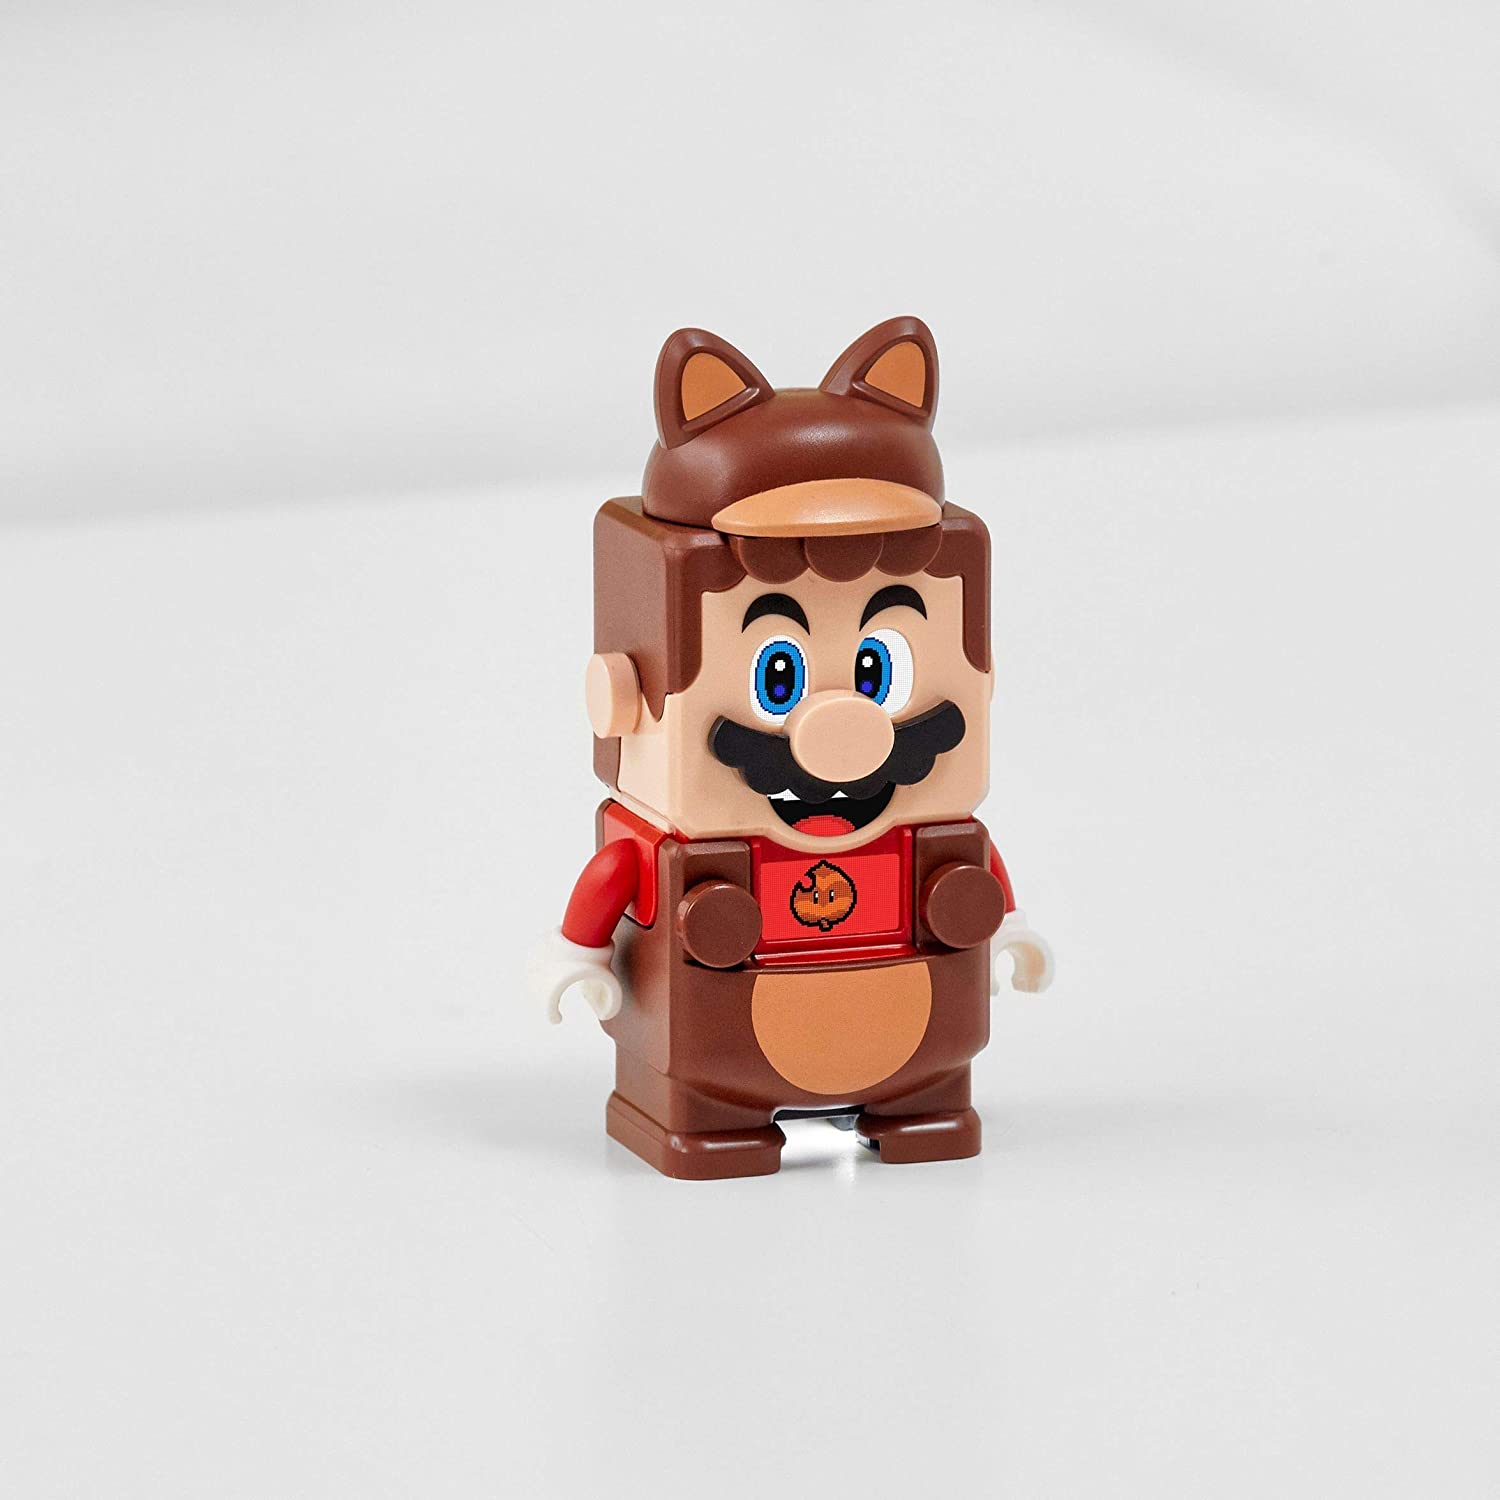 LEGO® Super Mario™ Mario tanuki - Power Up Pack